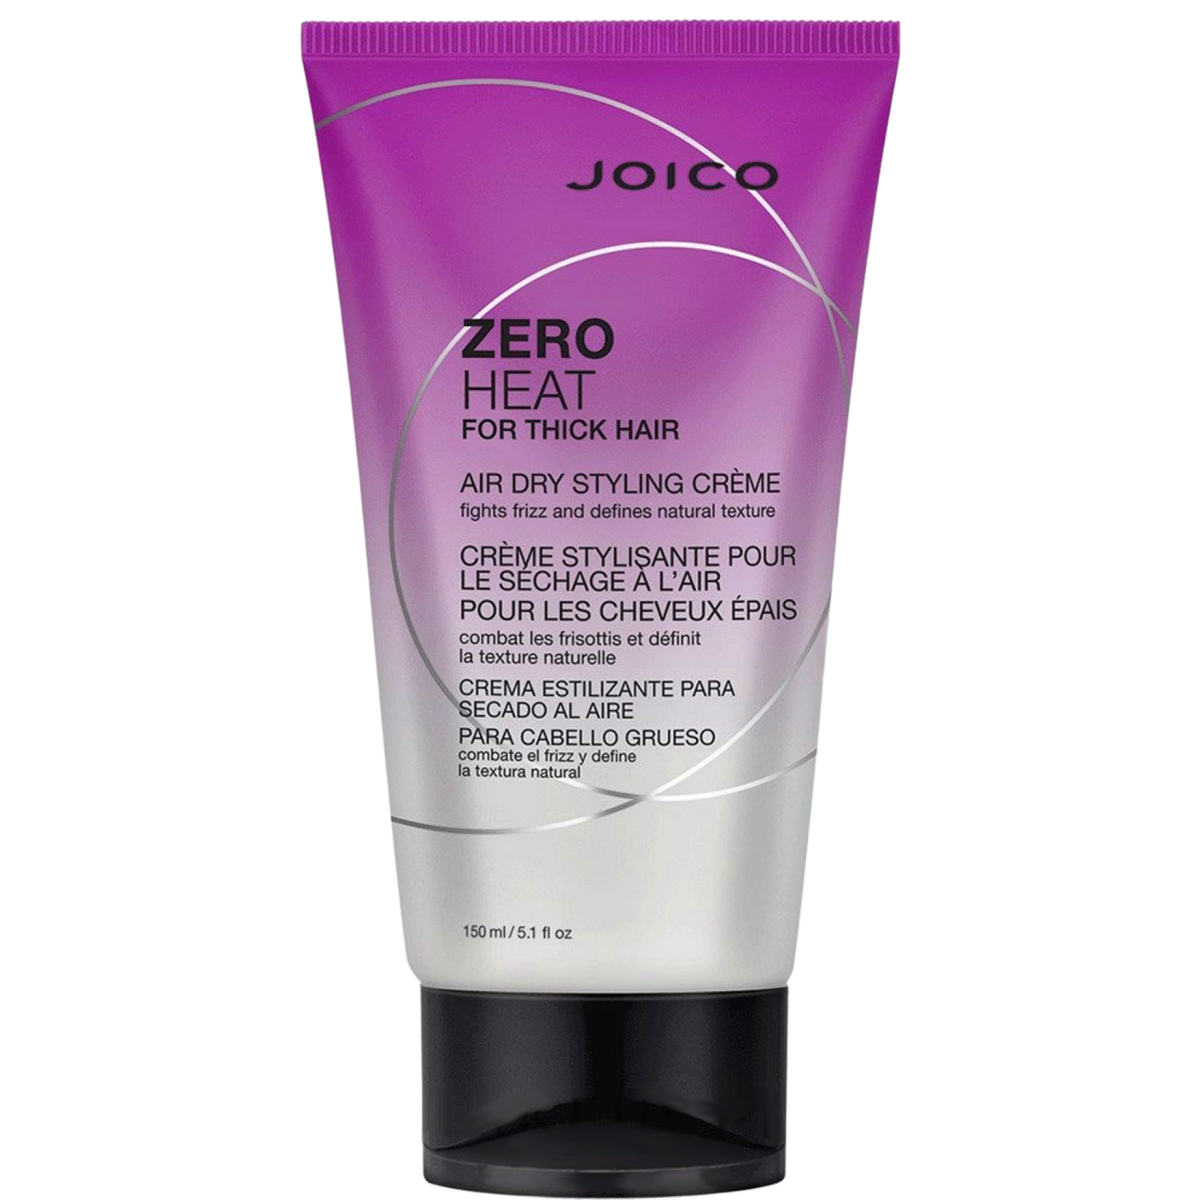 Joico Zero Heat Thick Hair - krem stylizujący do włosów, 150ml